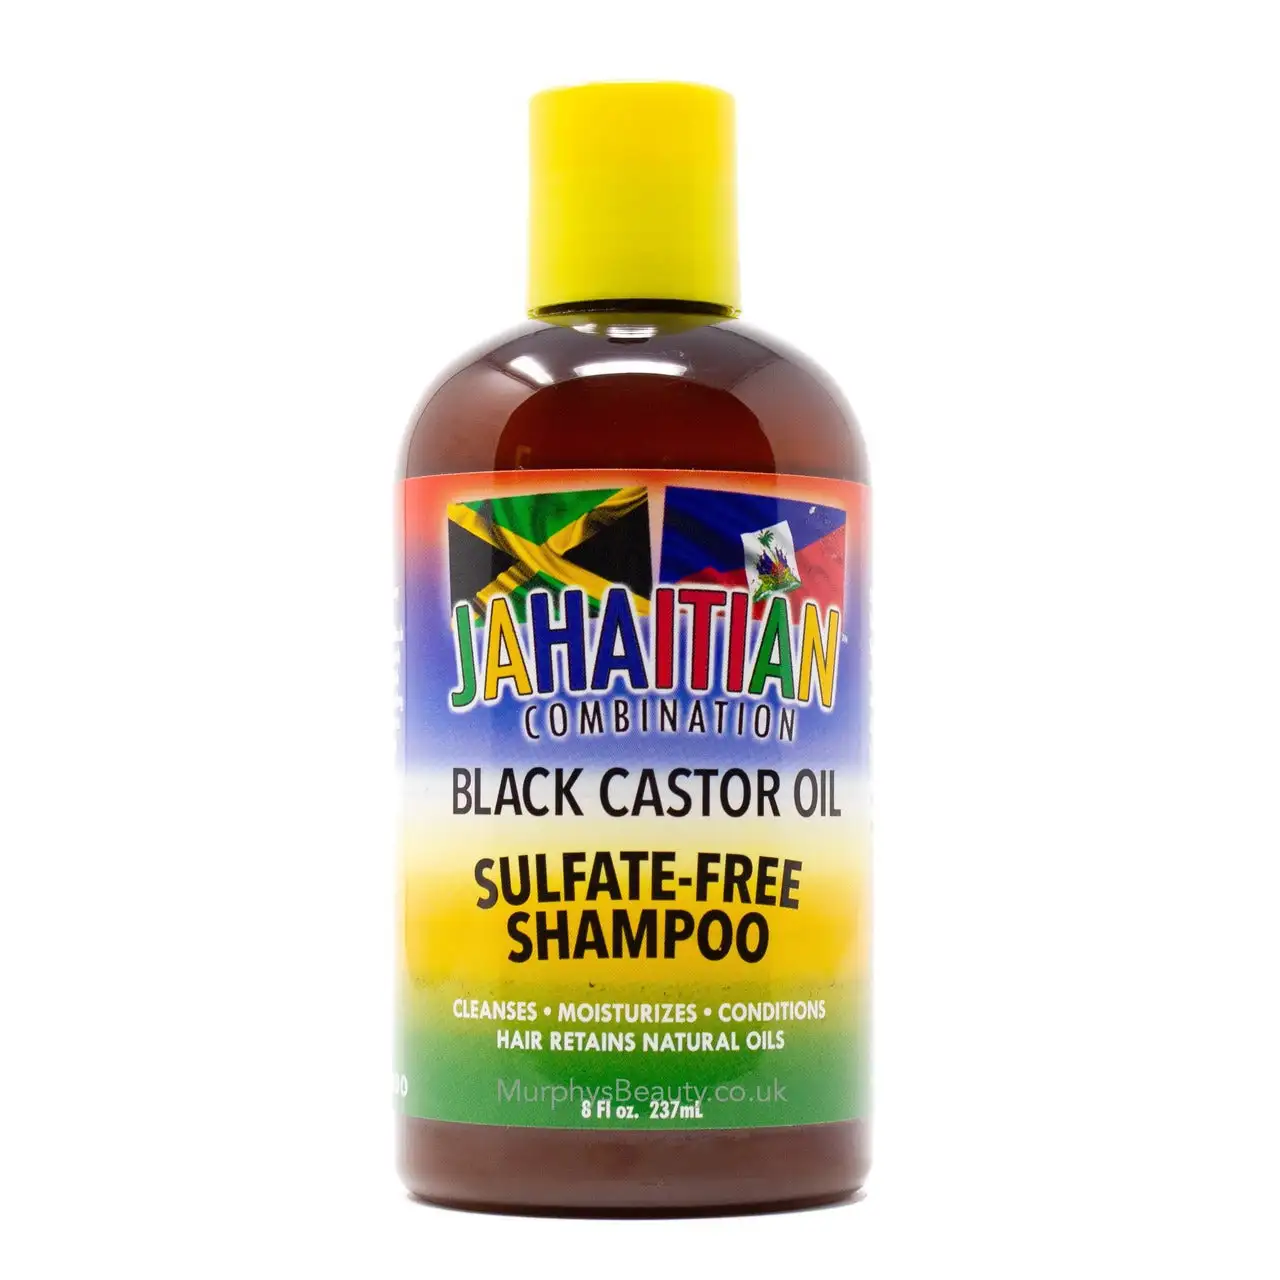 Jahaitian combinaison shampooing sans sulfate a lhuile de ricin noire 8 oz_6017. DIAYTAR SENEGAL - Là où l'Élégance Devient un Mode de Vie. Naviguez à travers notre gamme et choisissez des produits qui apportent une touche raffinée à votre quotidien.